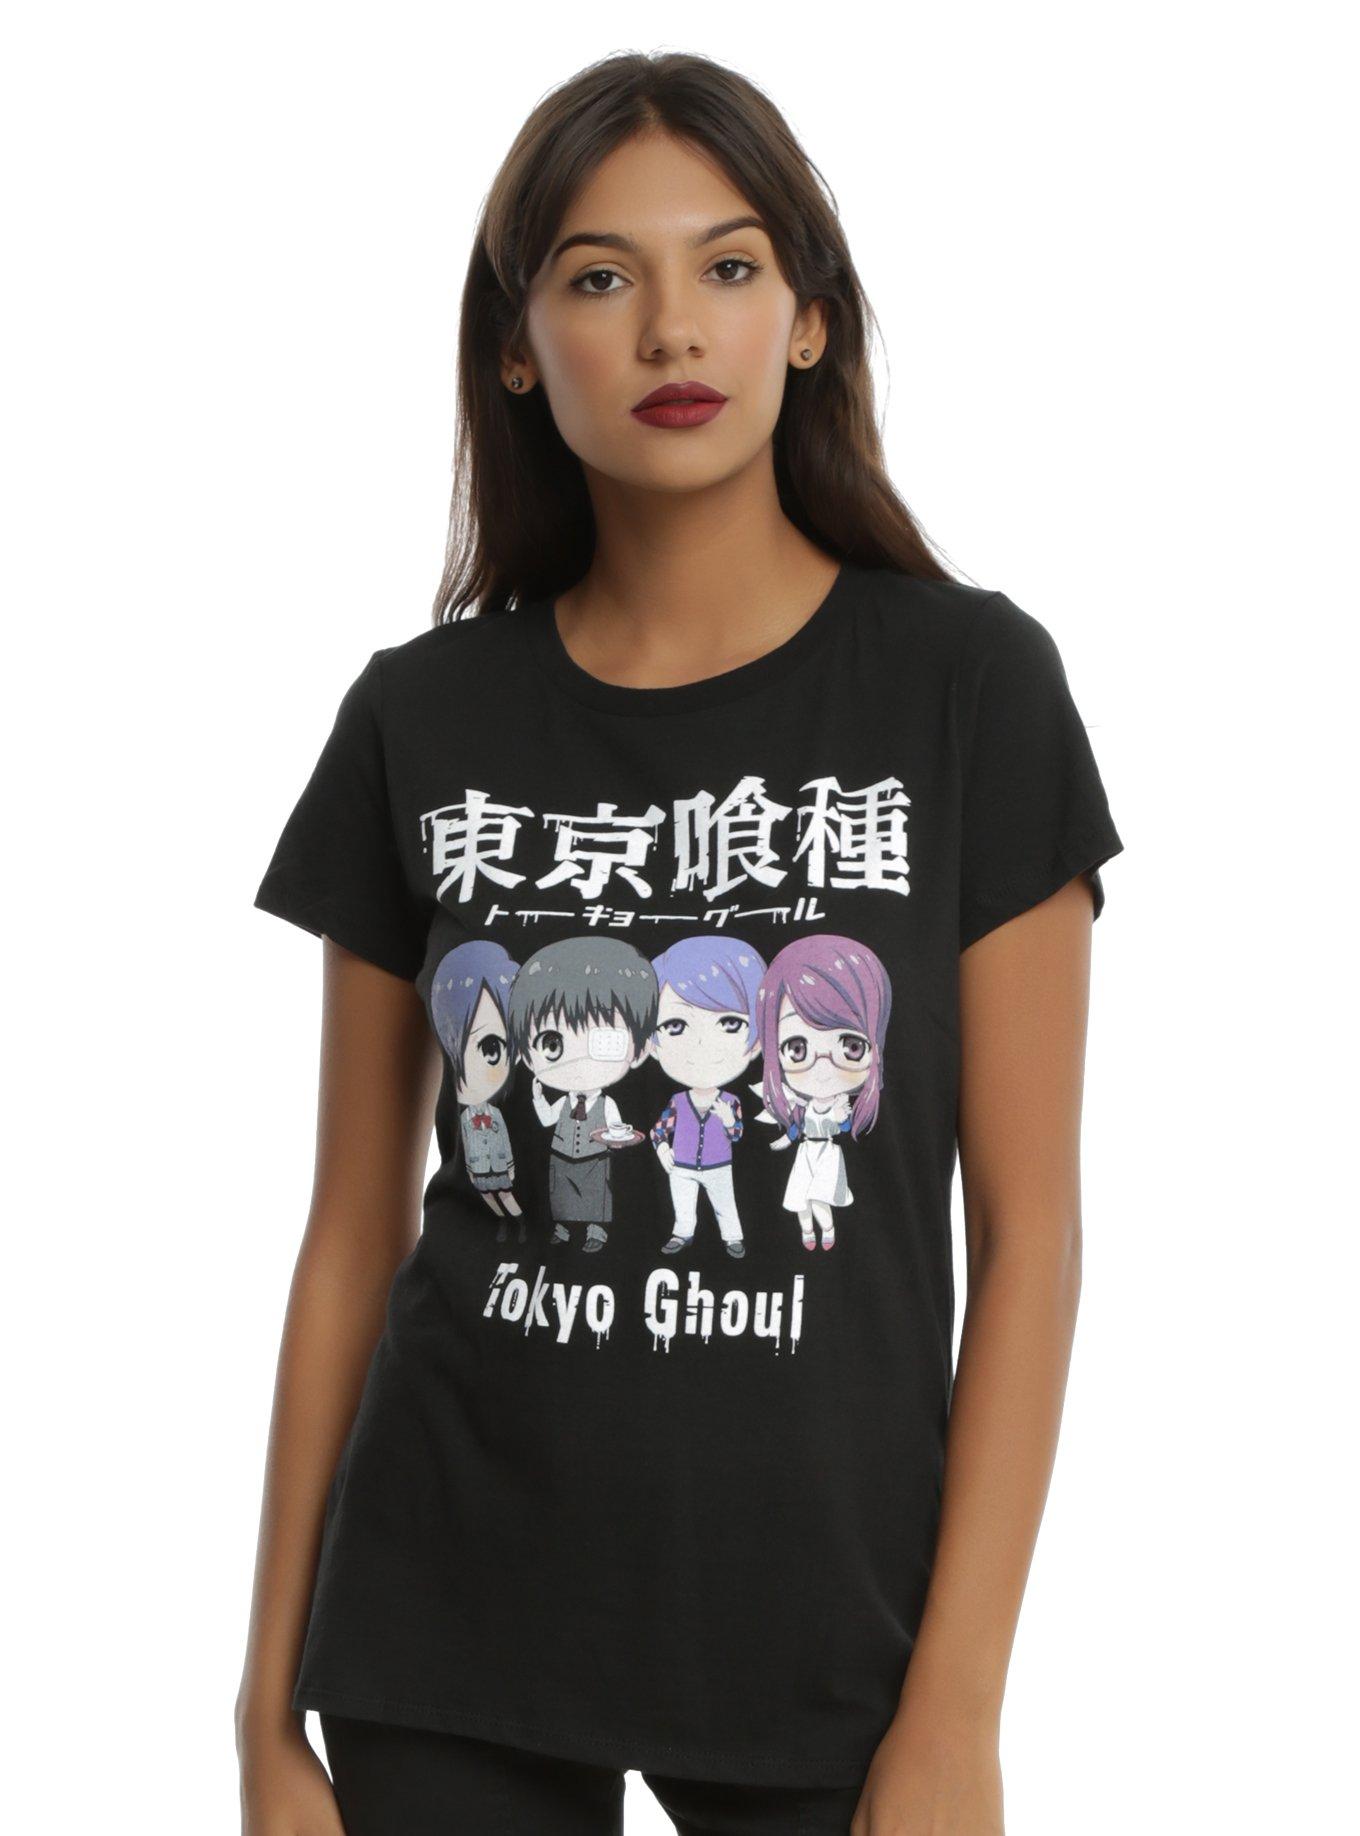 Tokyo Ghoul Chibi Characters Girls T-Shirt, BLACK, hi-res